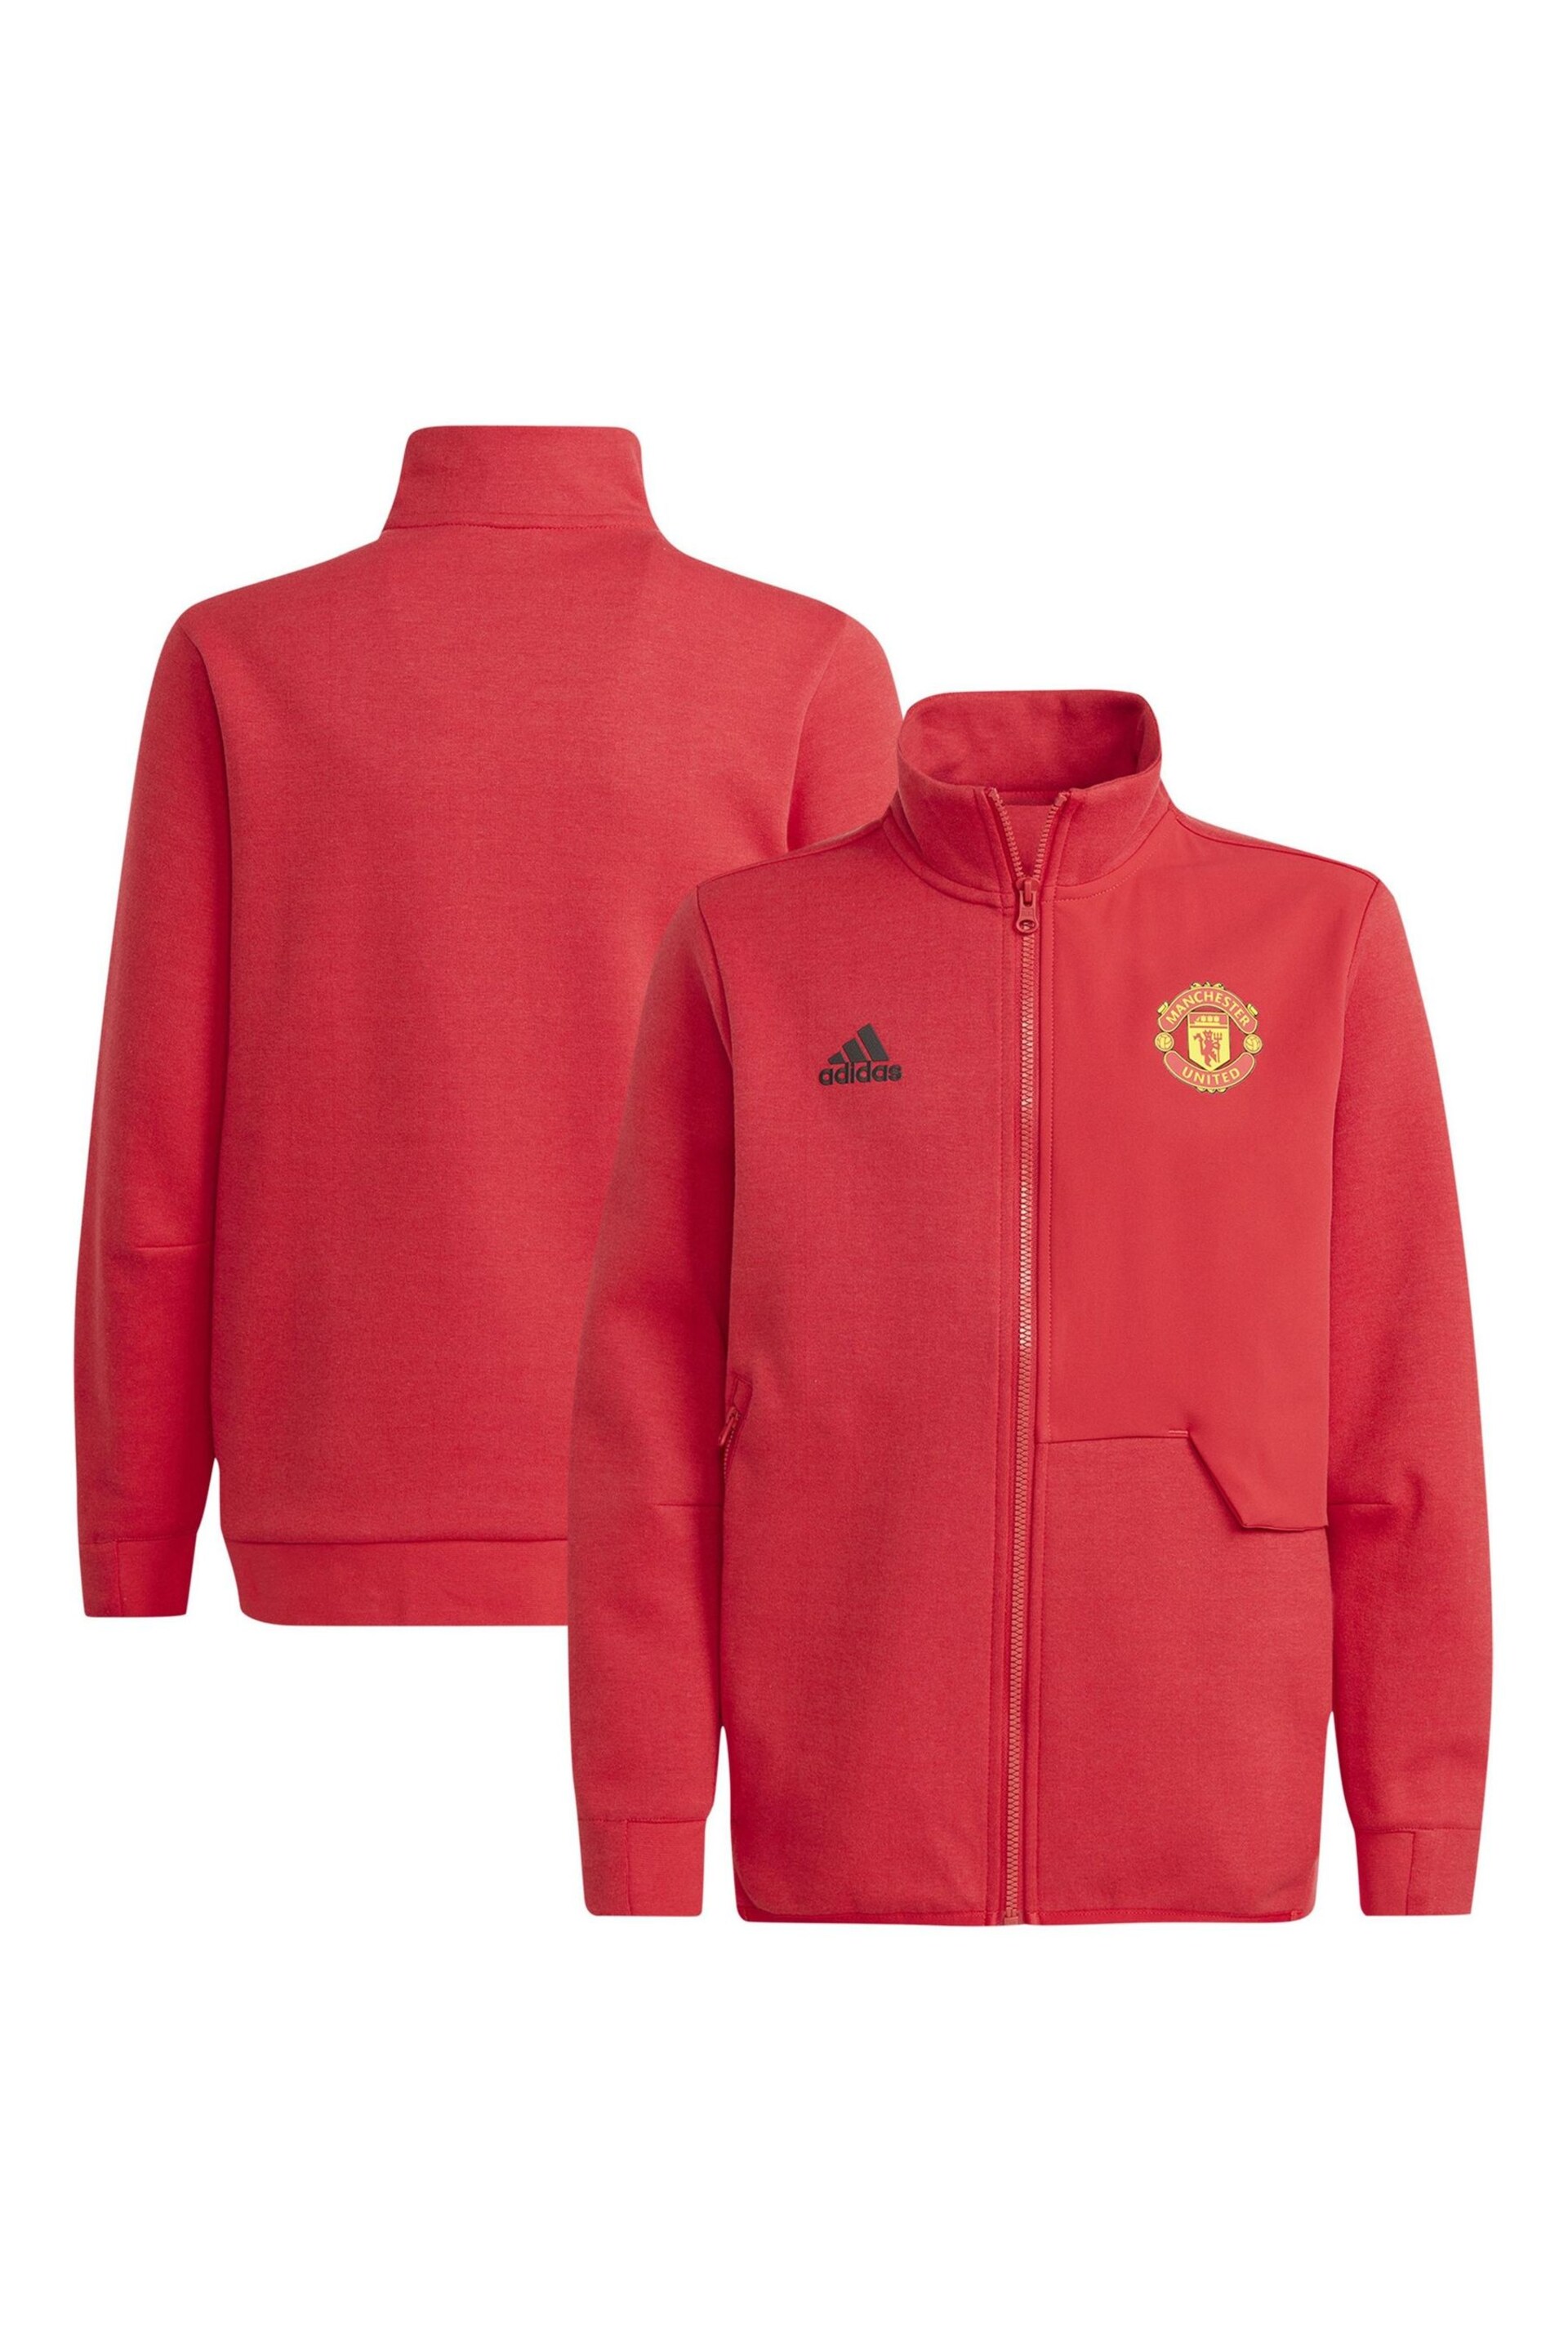 adidas Red Manchester United Anthem Jacket - Image 1 of 3